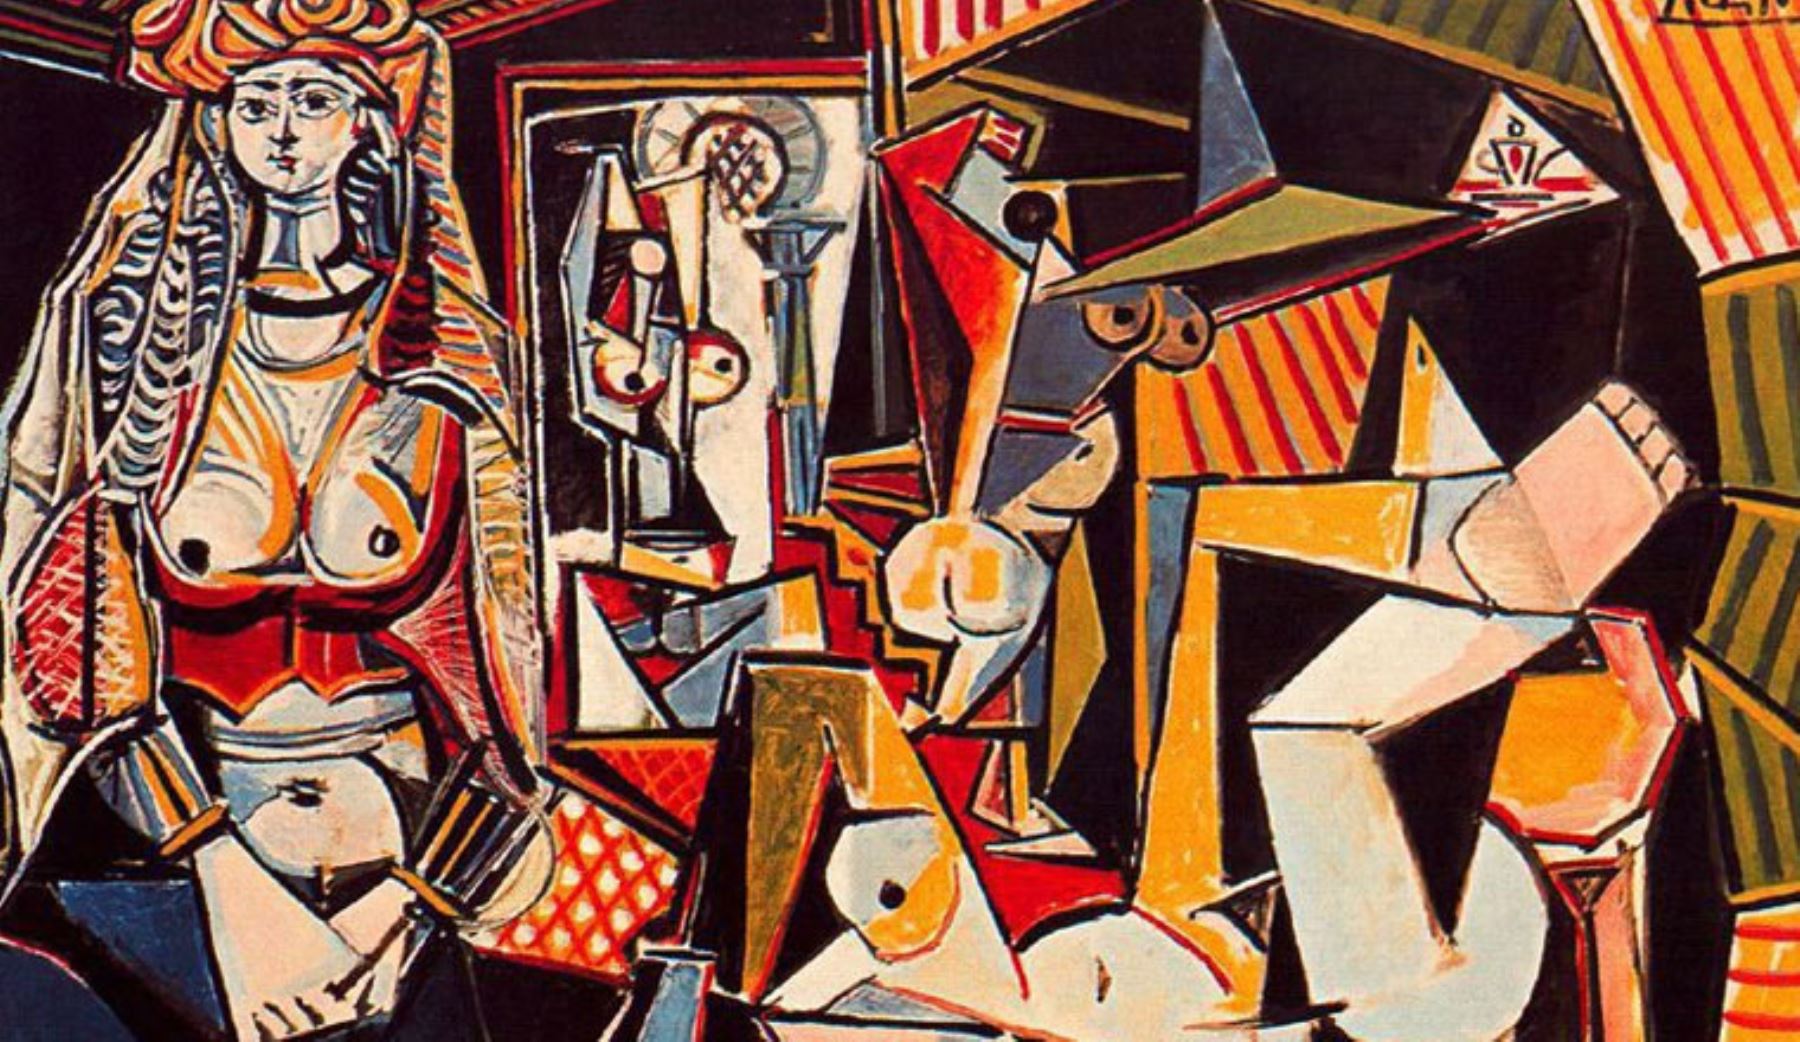 1- Pablo Picasso, "Las mujeres de Argel (versión 0)", vendido por 179,36 millones de dólares el 11 de mayo de 2015 en Christie